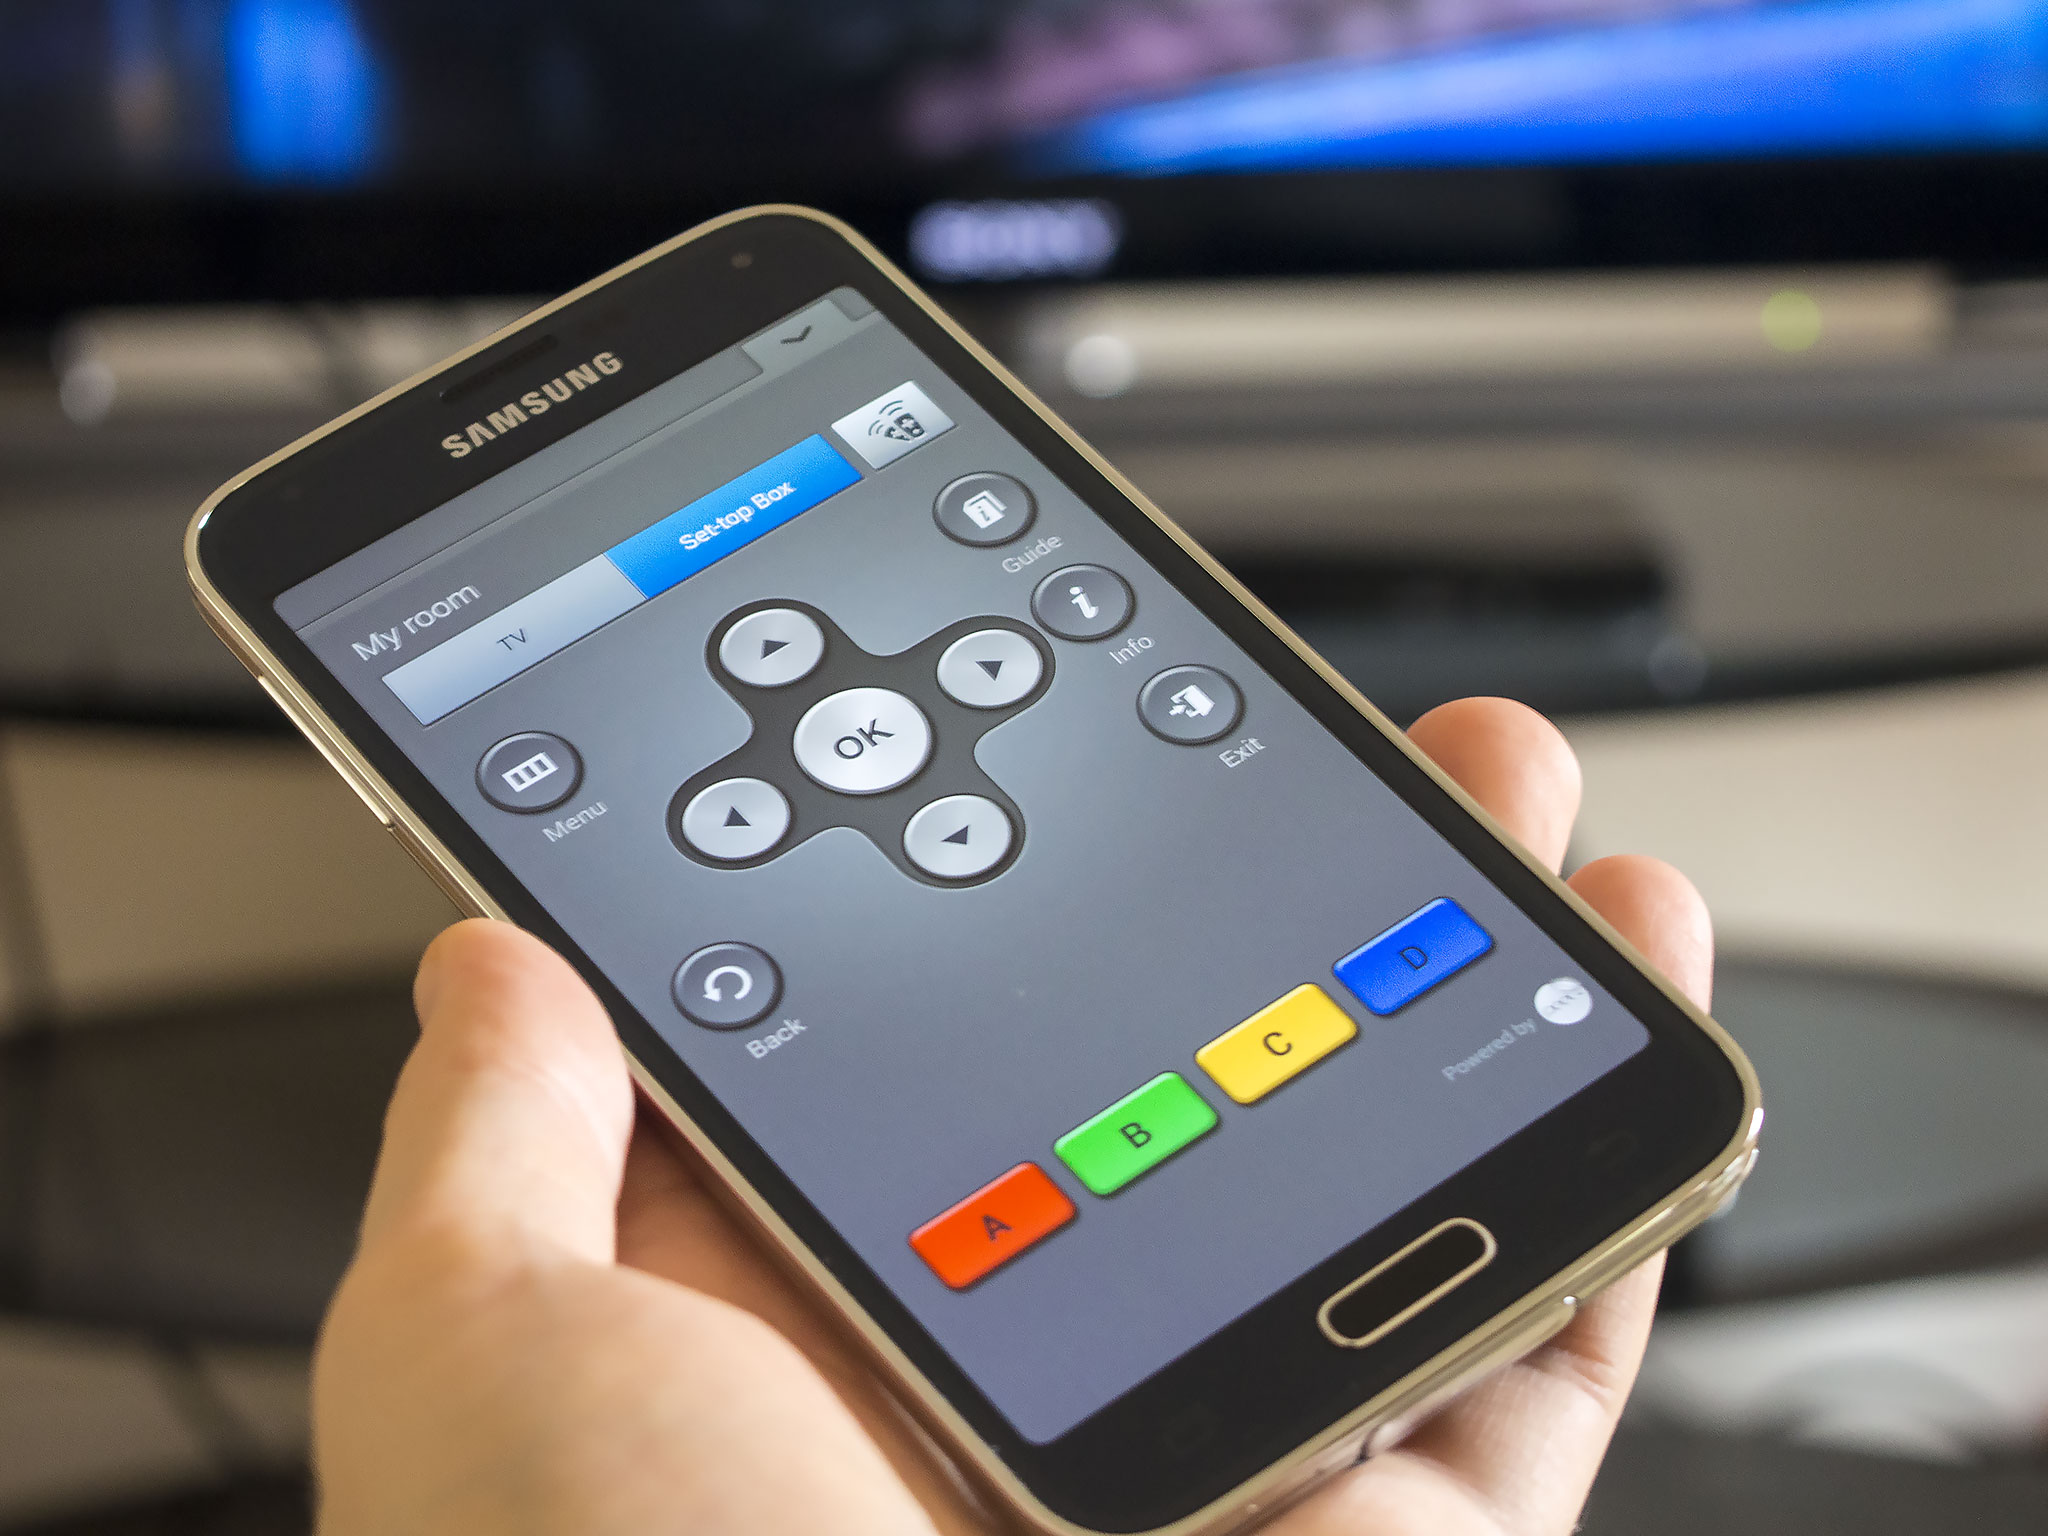 Camera Pro Remote Control For Samsung